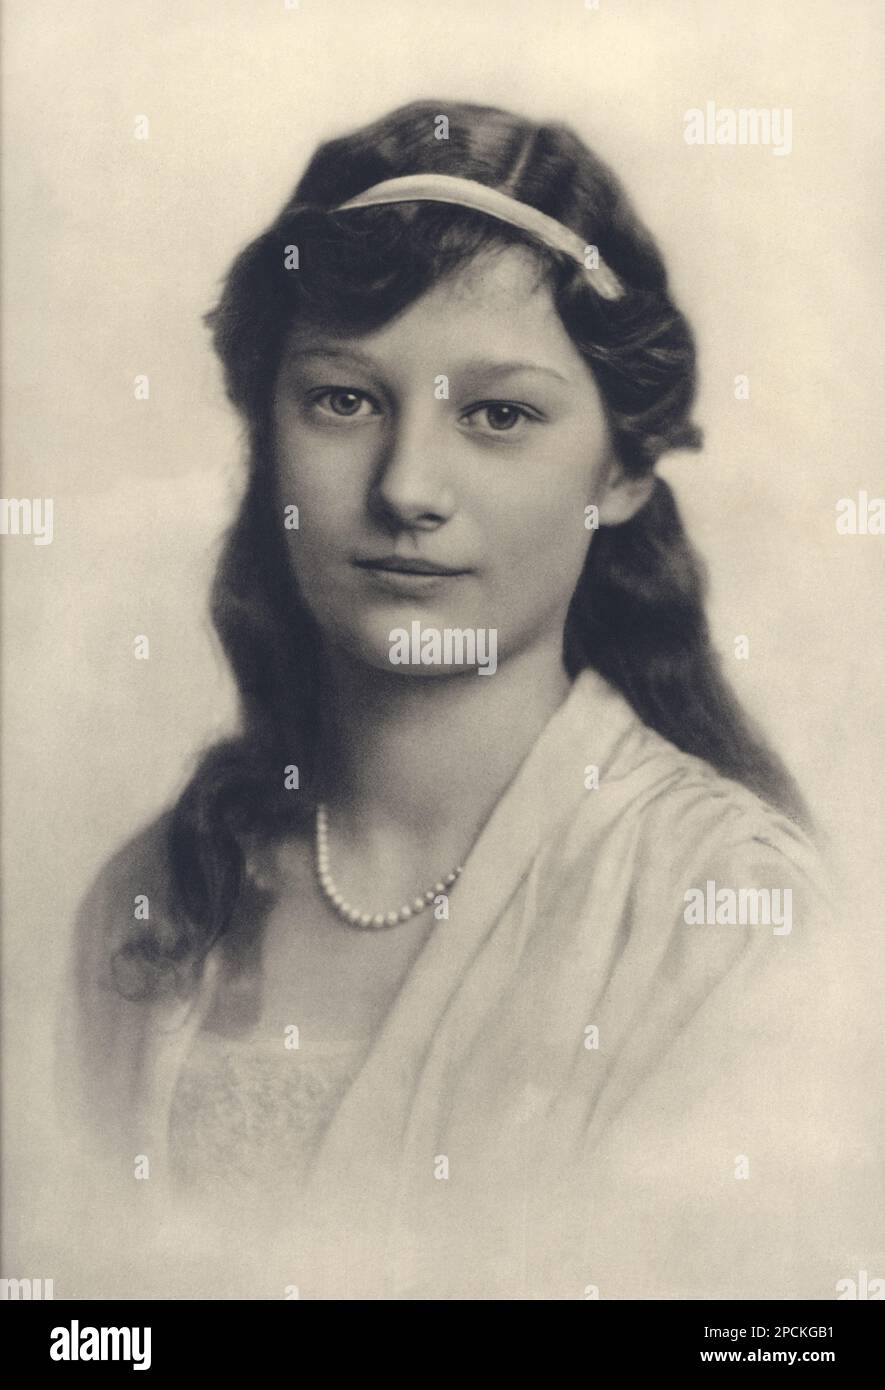 1920 , HOLM , SUECIA : Reina ASTRIDA de BÉLGICA (princesa de Suecia, 1905 - 1935), casada con el rey LEOPOLDO III de los belgas SAJONIA COBURGO GOTHA ( 1901 - 1983 ). En esta foto cuando era una joven princesa en Suecia - Casa de BRABANTE - BRABANTE - Josephine Charlotte - realeza - nobili - nobiltà - principessa reale - BELGIO - retrato - ritratto - REGINA di SVEZIA - HISTORIA - FOTO STORICHE - collar de perlas - collana di perle - perla ---- Archivio GBB Foto de stock